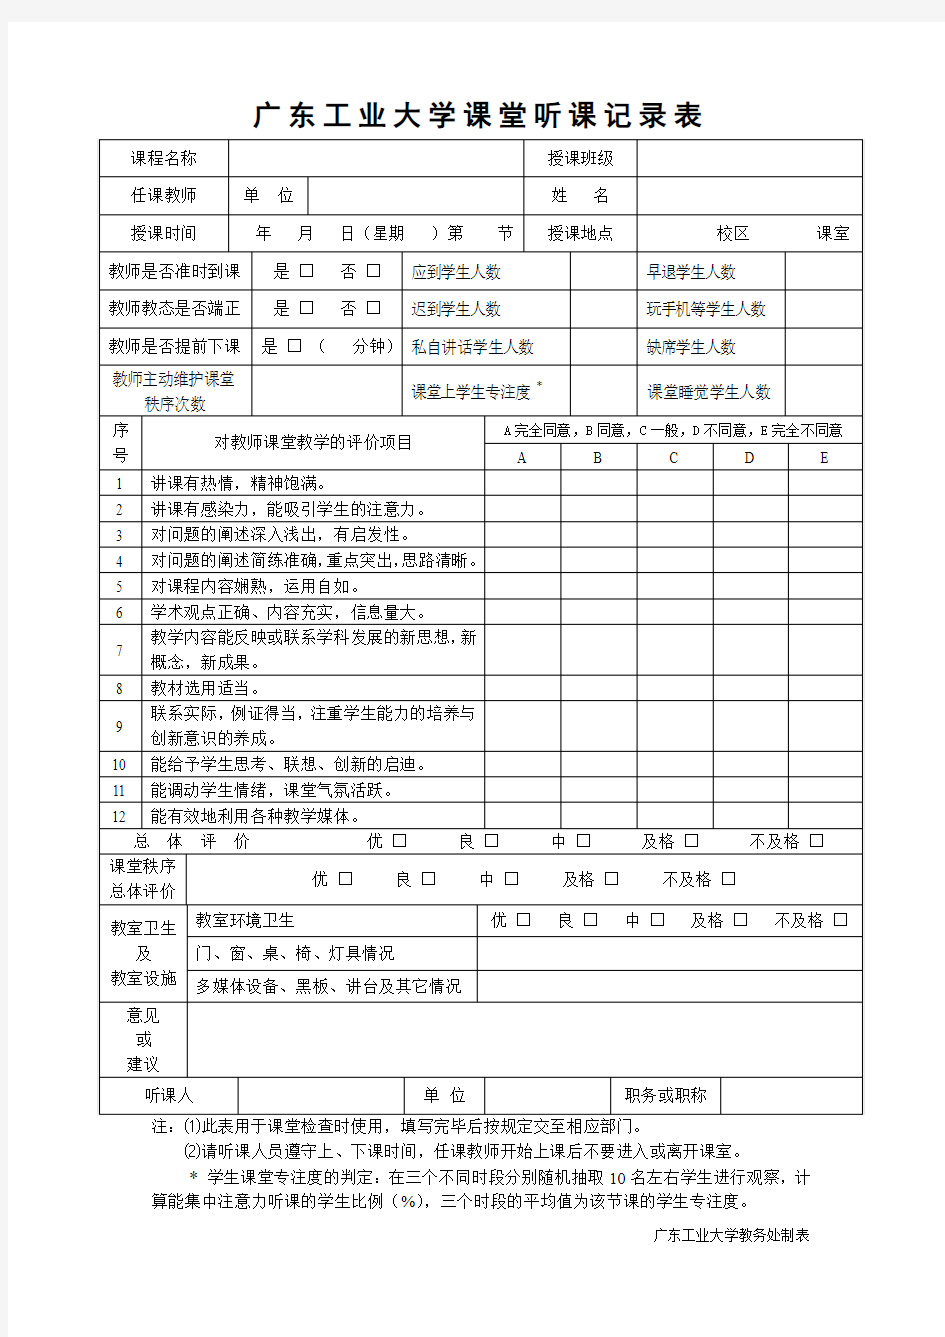 广东工业大学课堂听课记录表